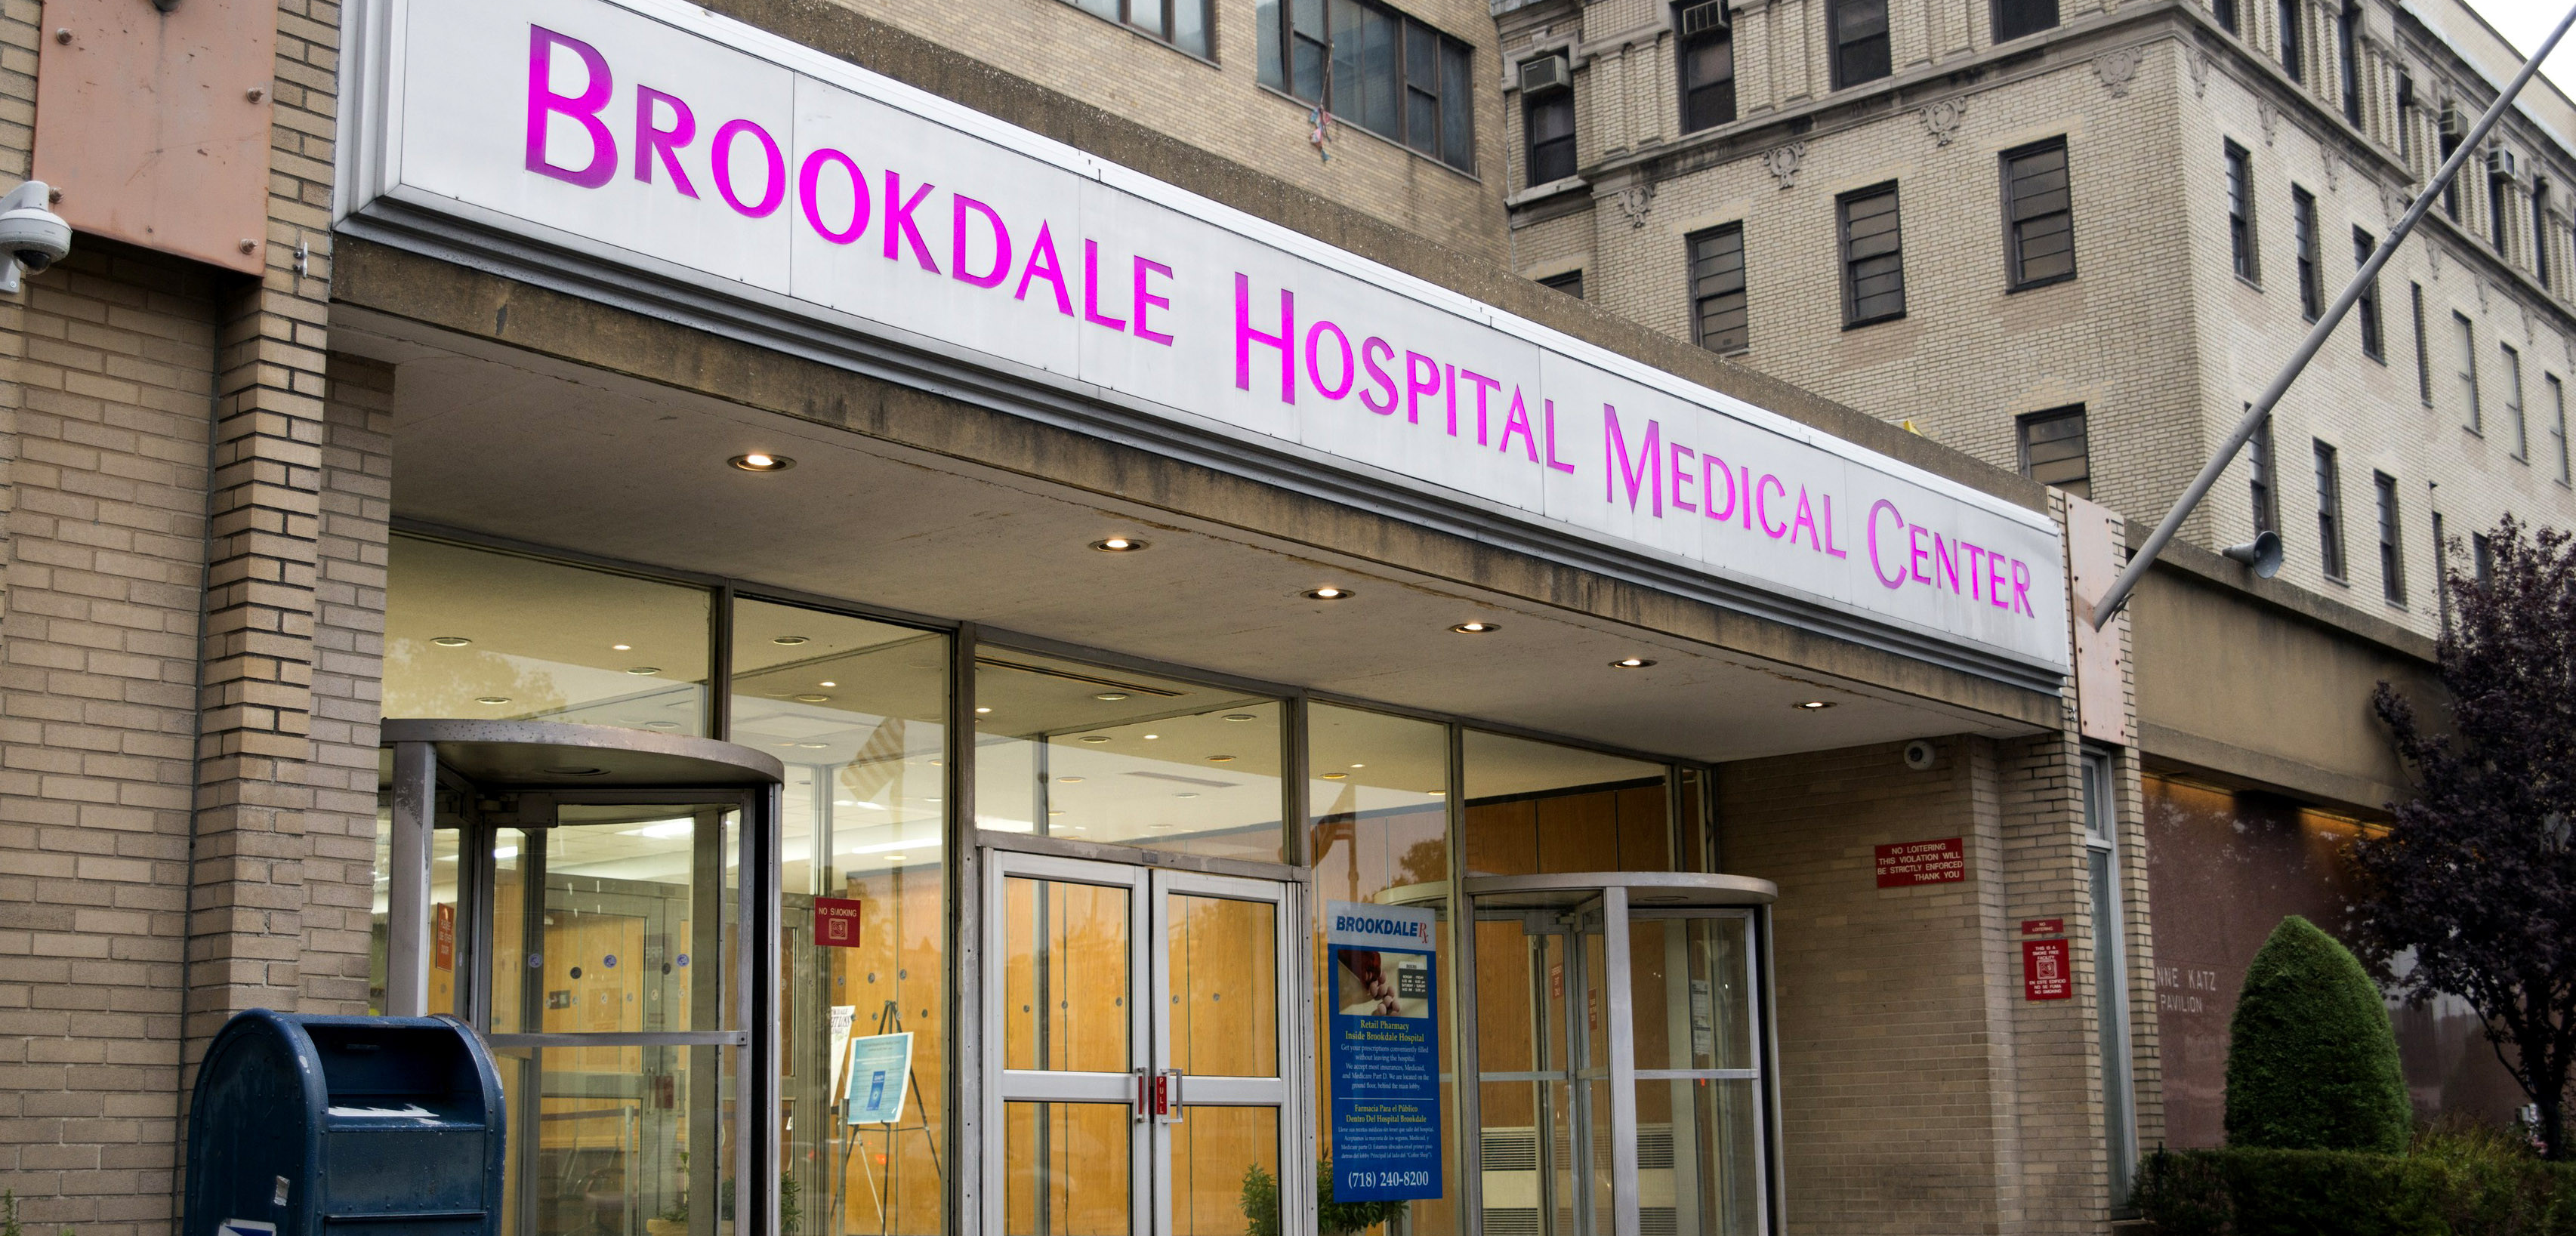 Brookdale Hospital Medical Center